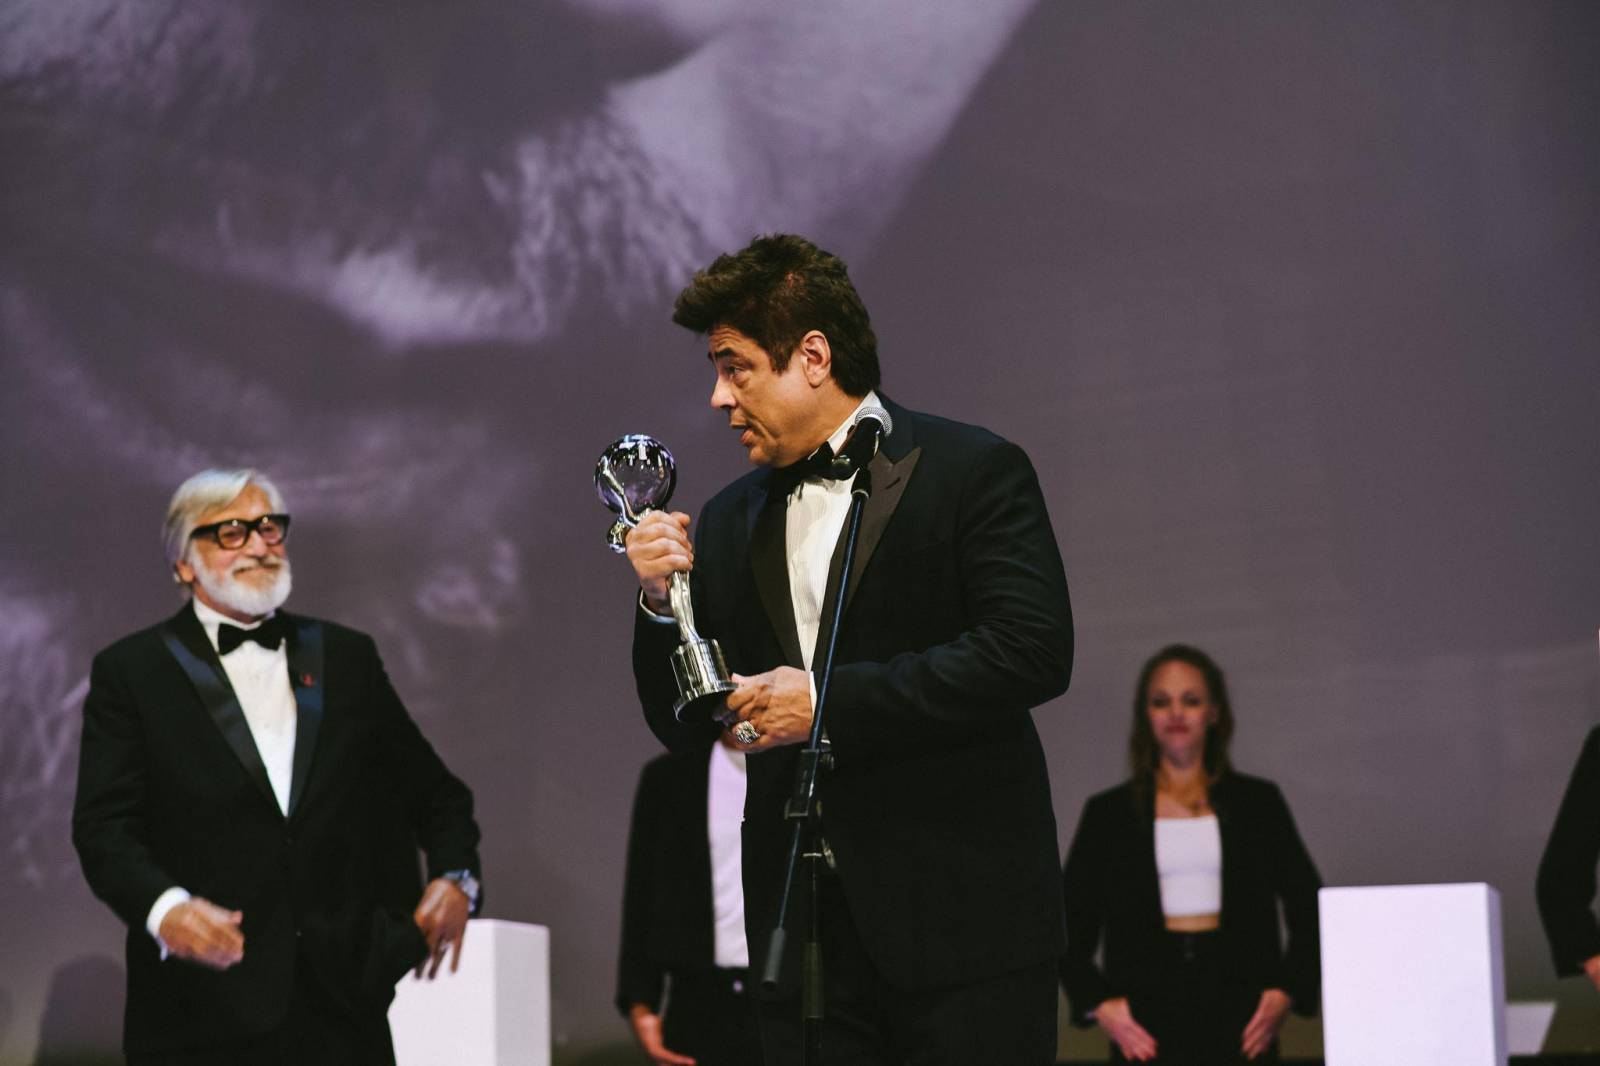 MFF Karlovy Vary vyvrcholil závěrečným ceremoniálem, následovala show Monkey Business s Jakubem Prachařem i Adamem Mišíkem